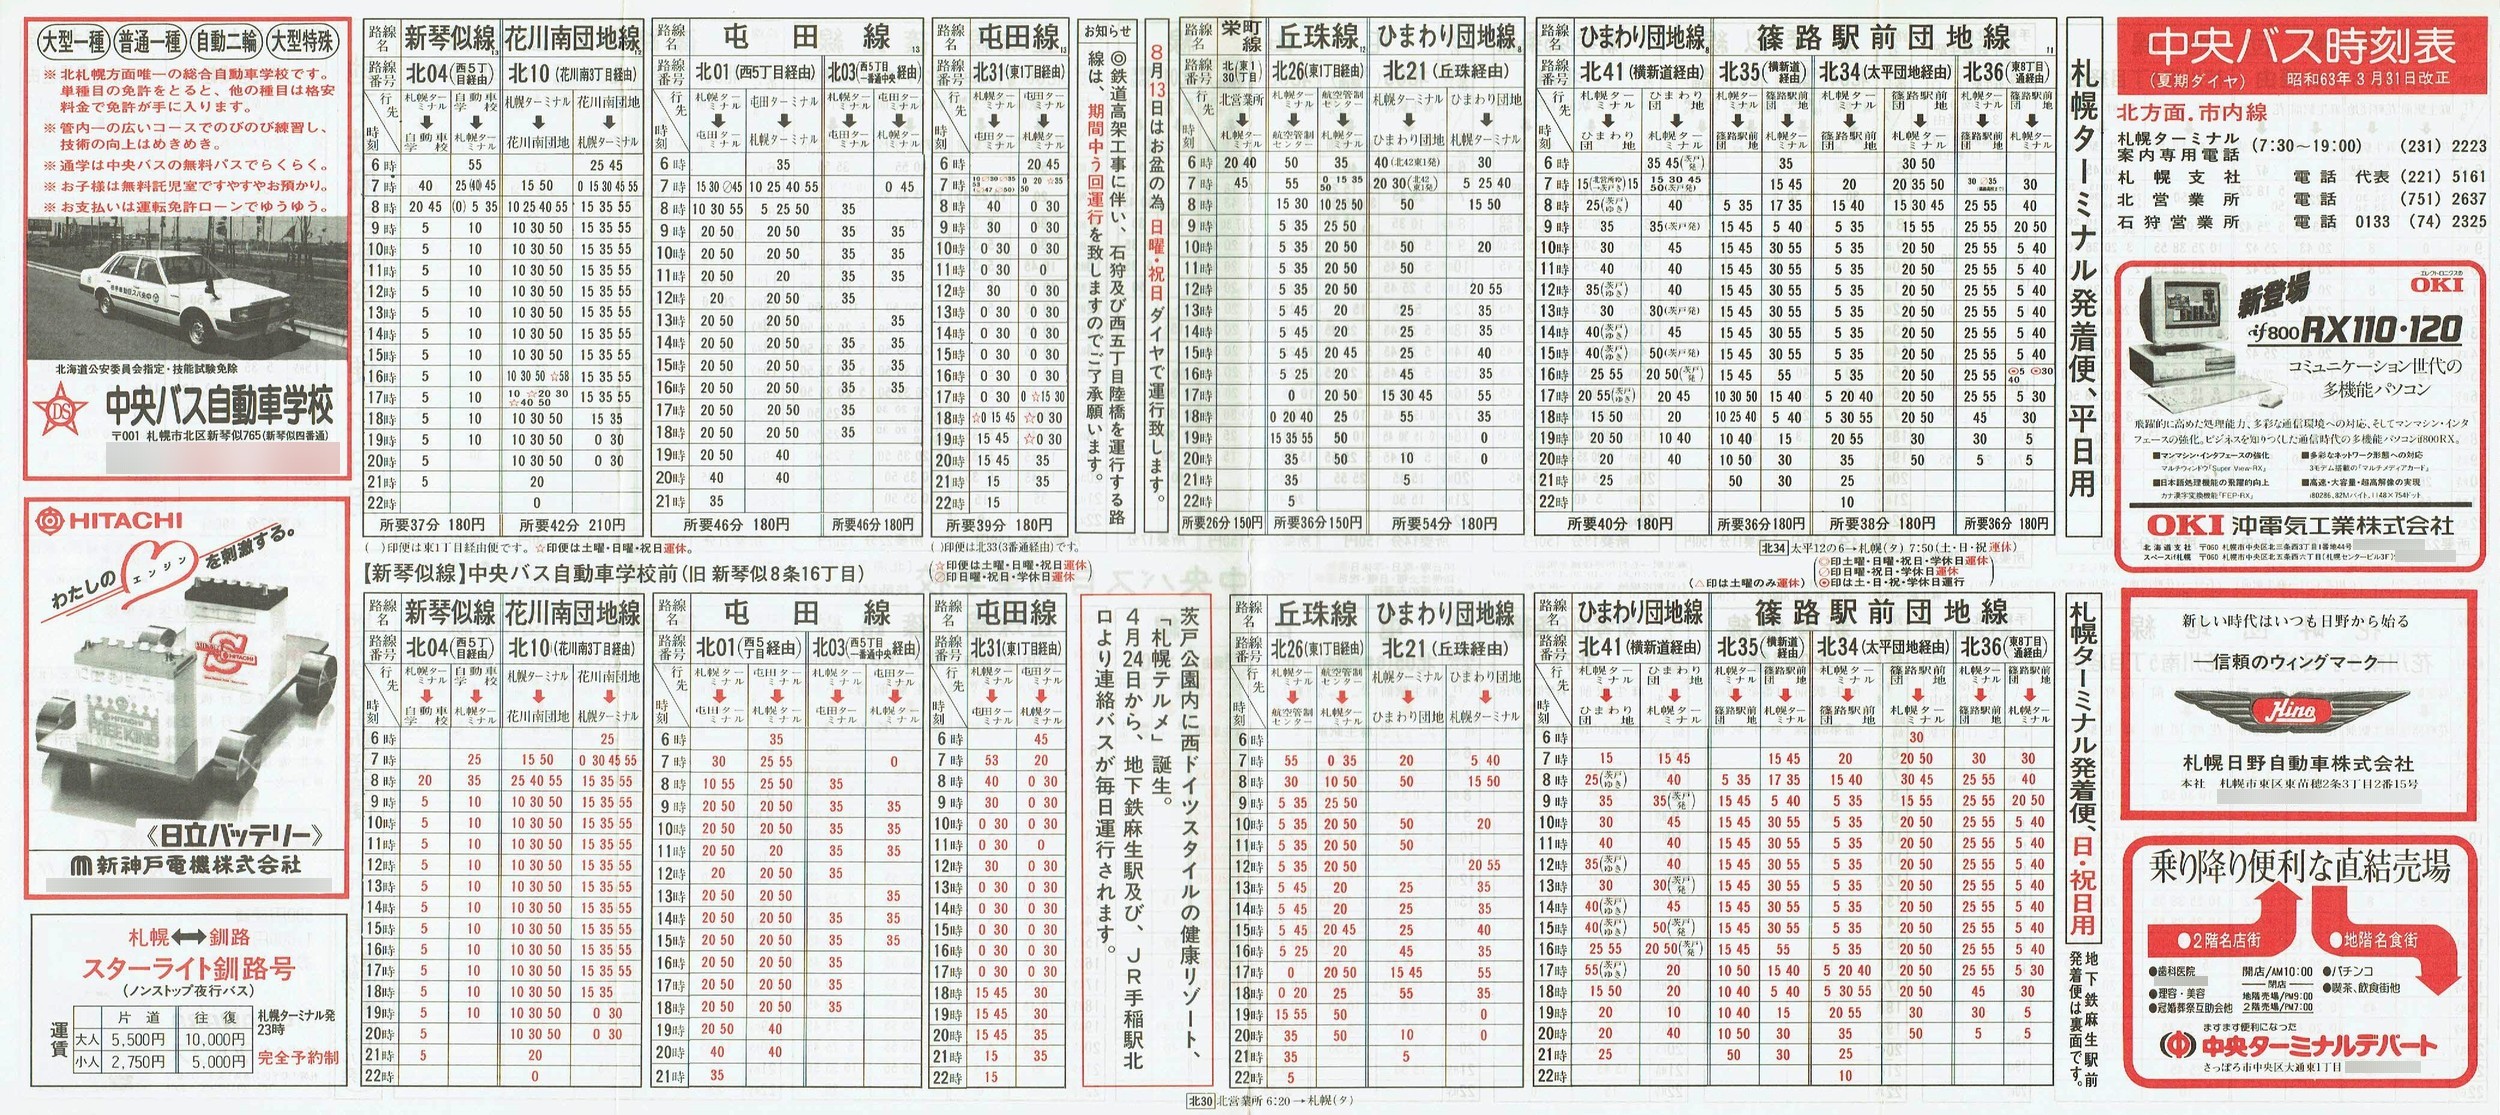 1988-03-31改正_北海道中央バス(札幌)_札幌市内線北方面時刻表表面